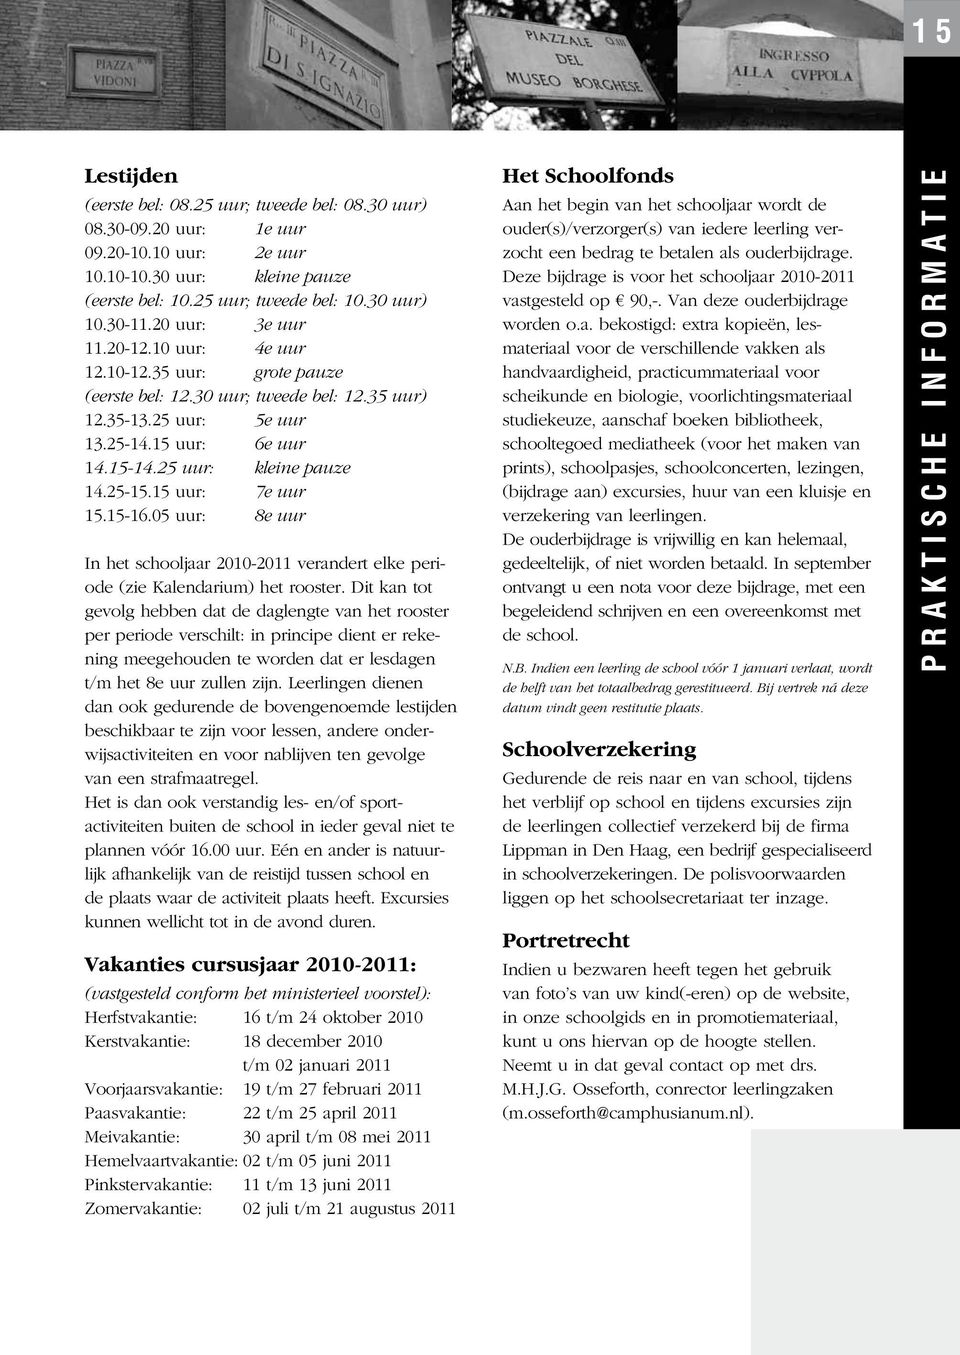 25-15.15 uur: 7e uur 15.15-16.05 uur: 8e uur In het schooljaar 2010-2011 verandert elke periode (zie Kalendarium) het rooster.